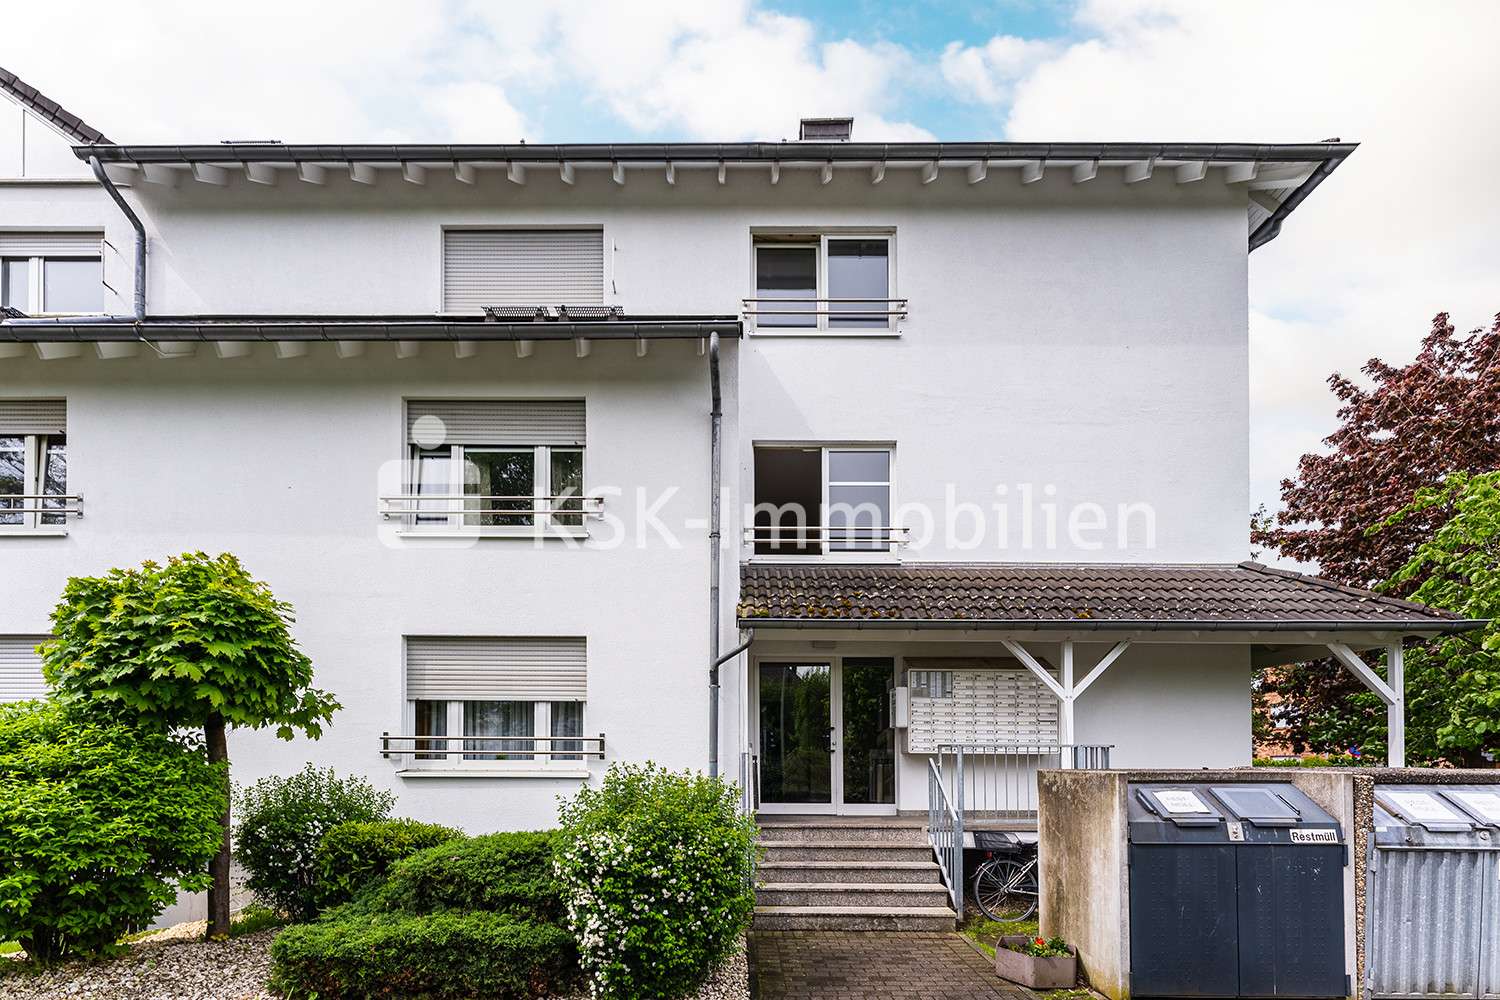 115566 Außenansicht - Appartement in 51503 Rösrath mit 27m² kaufen